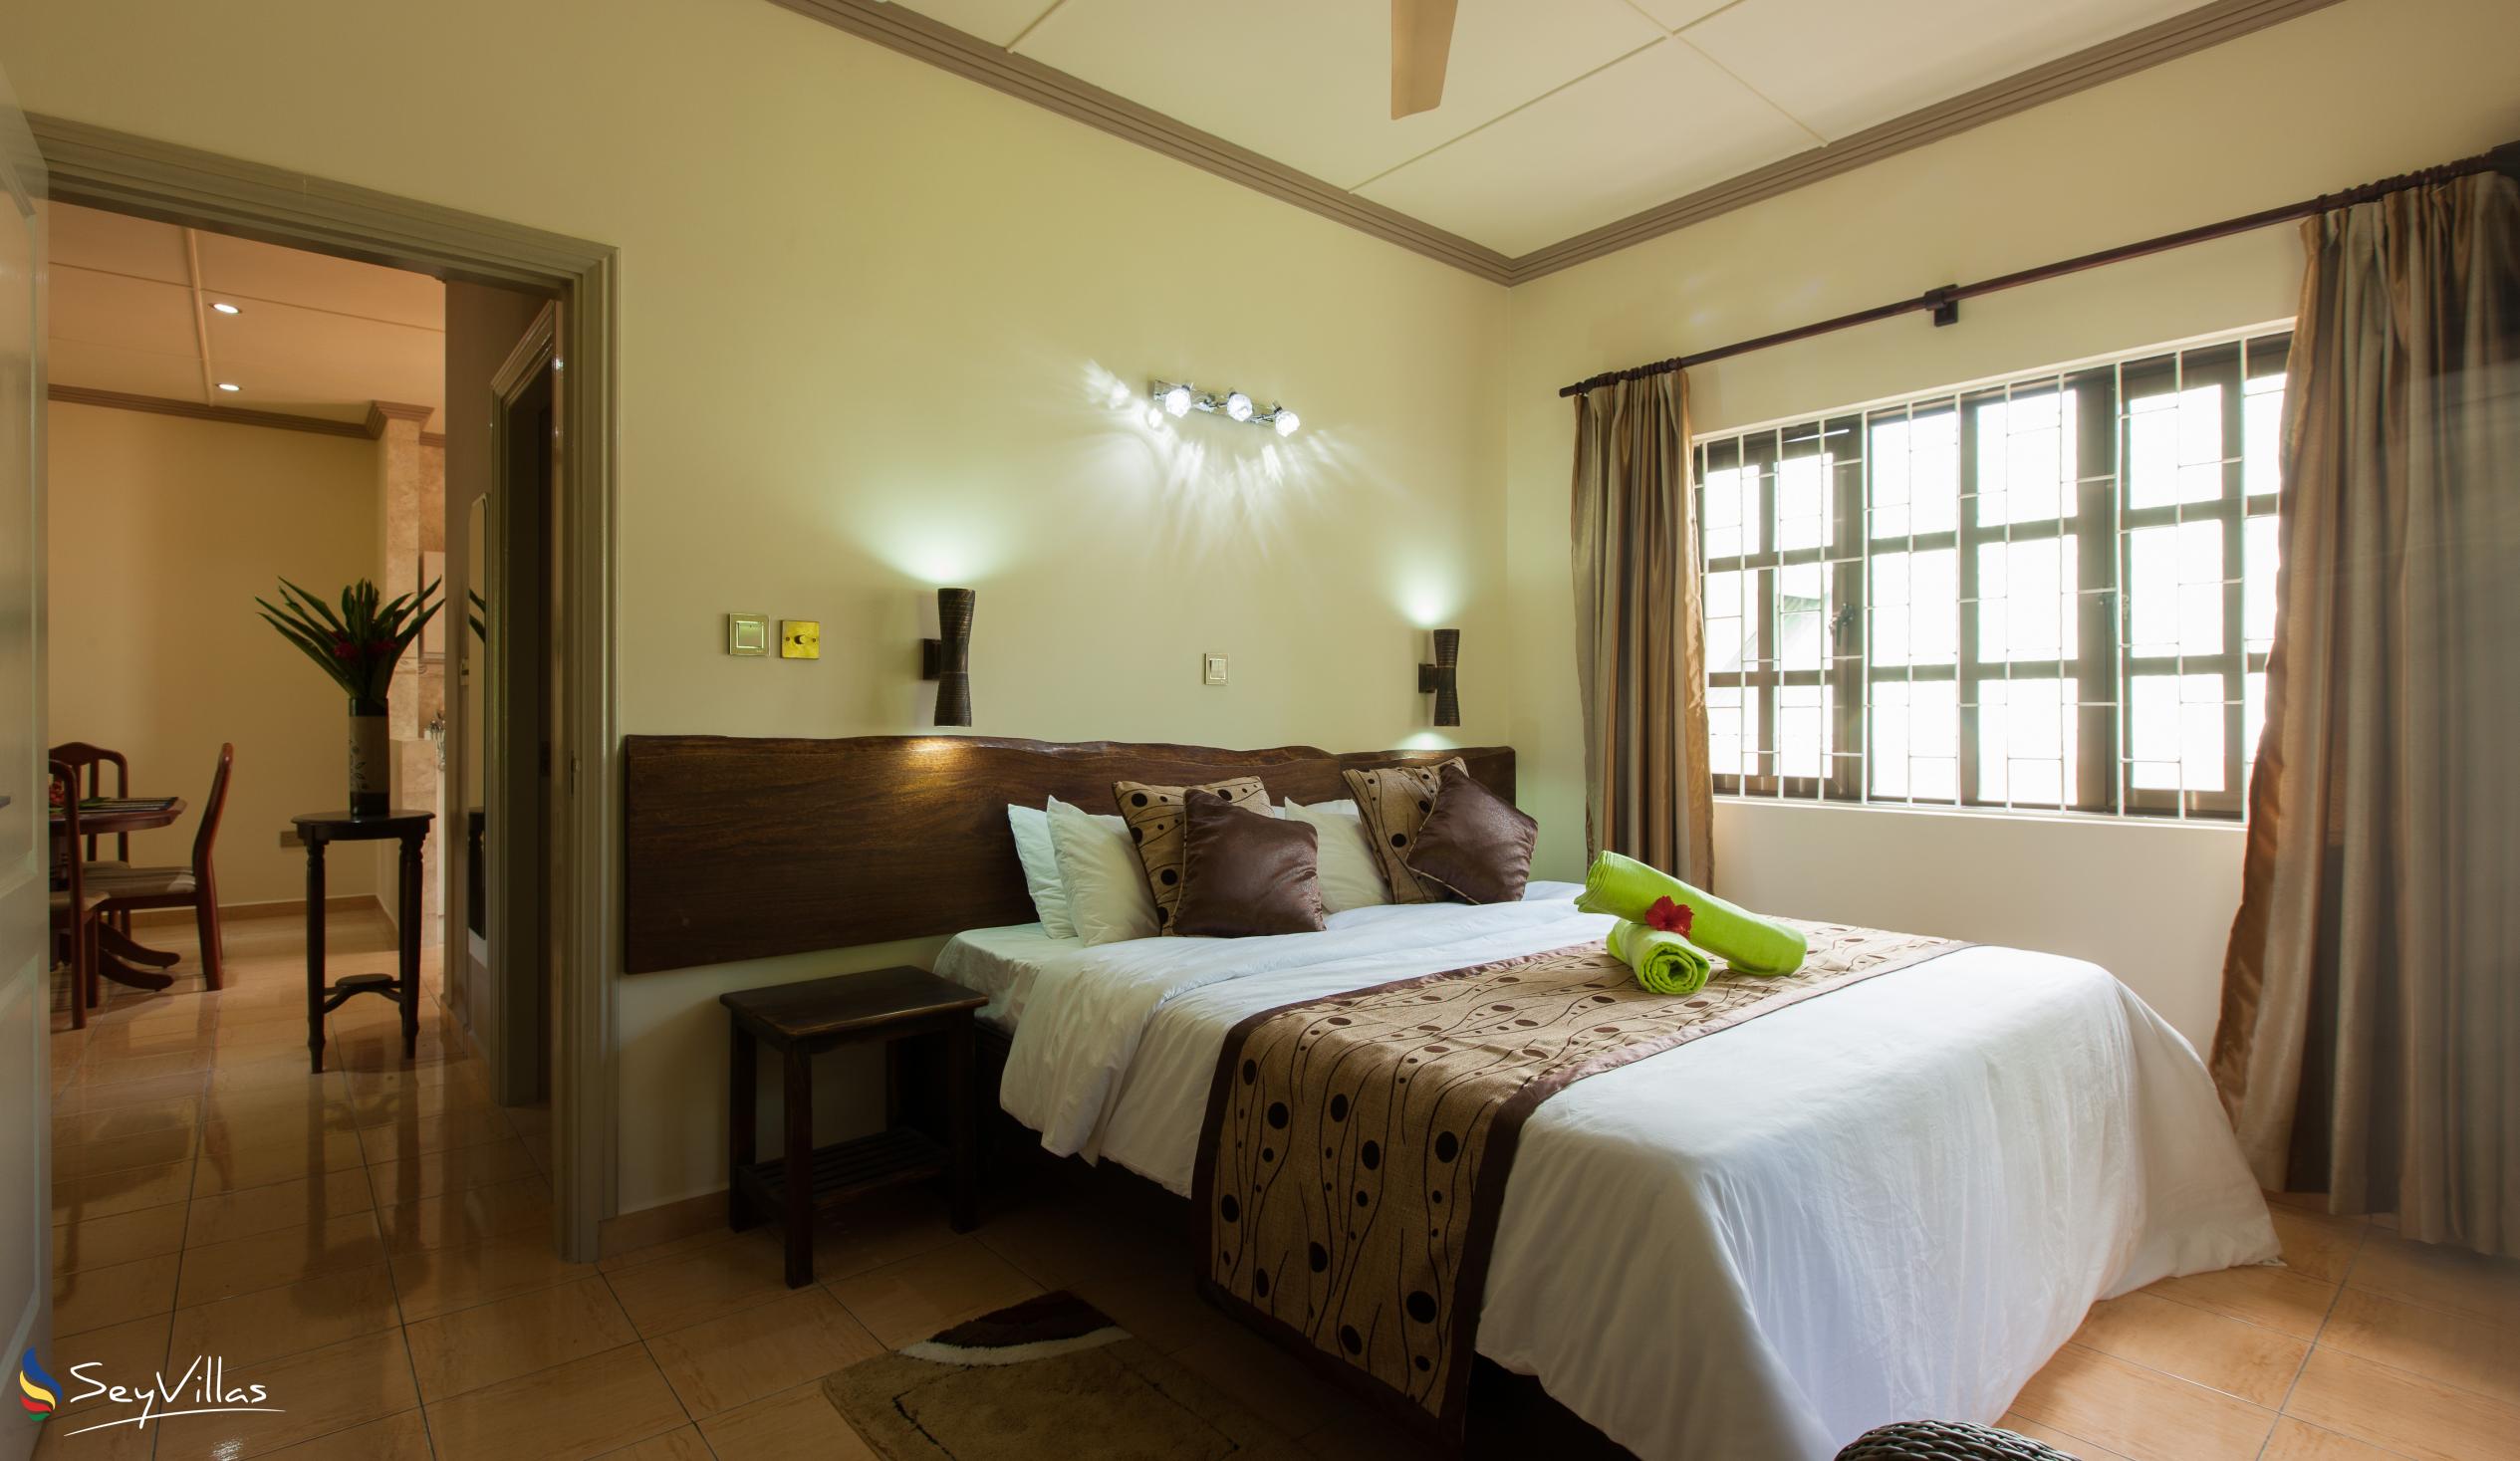 Foto 52: Chez Bea Villa - Appartamento con 2 camere - Praslin (Seychelles)